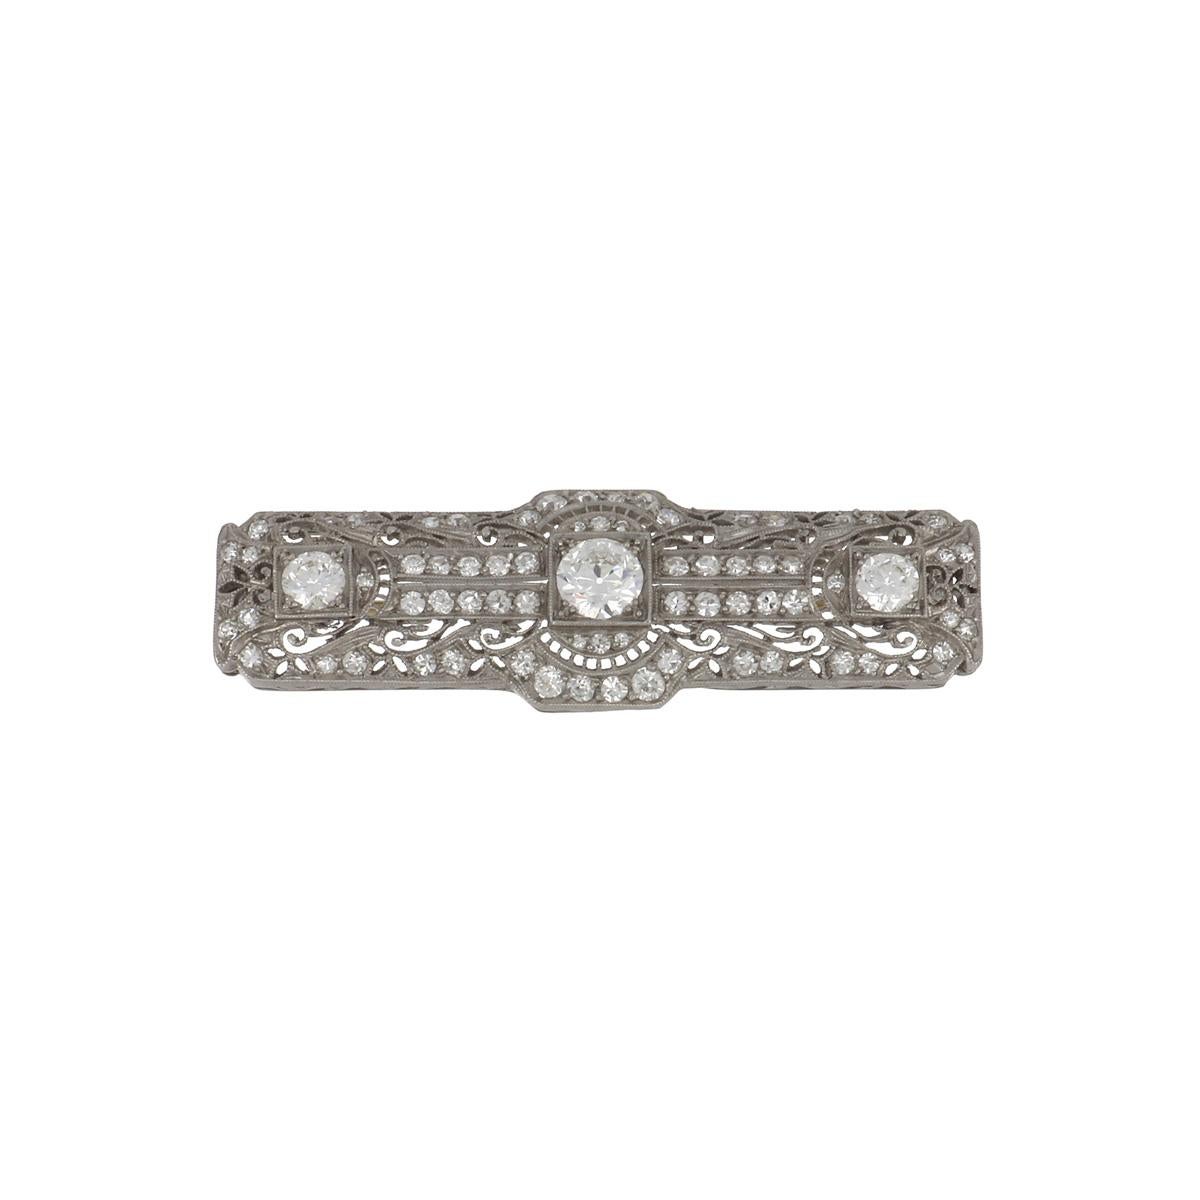 An Edwardian platinum filigree rectangular bar pin, set with 2.50 carats of diamonds. Circa 1915